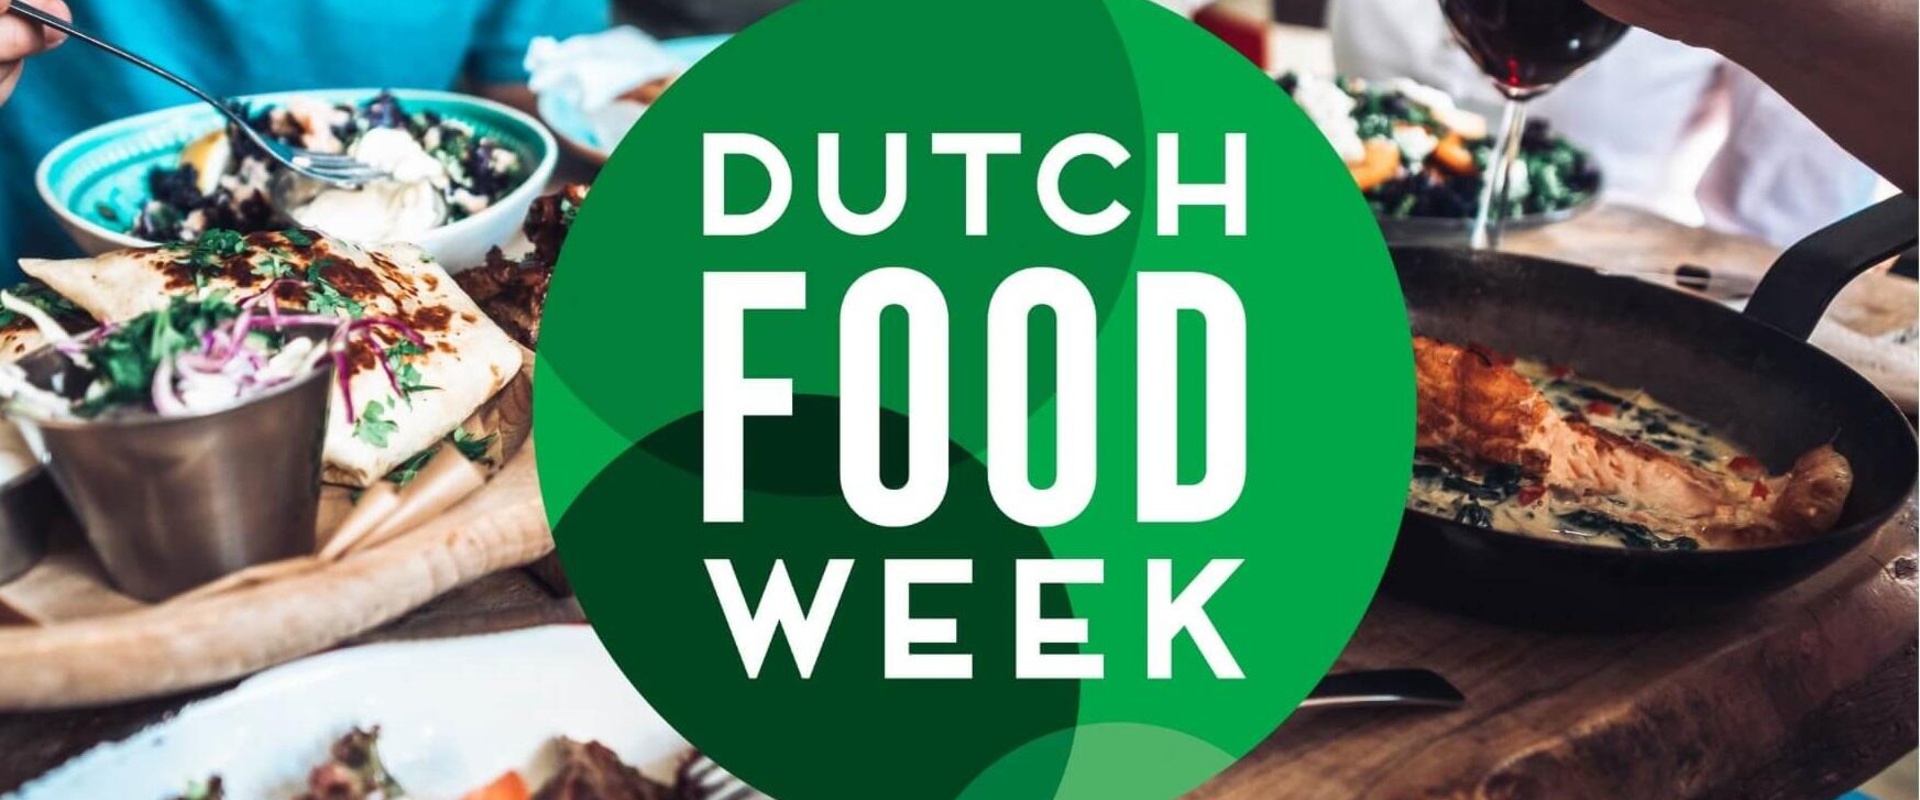 AgriFood Capital ook dit jaar partner van Dutch Food Week